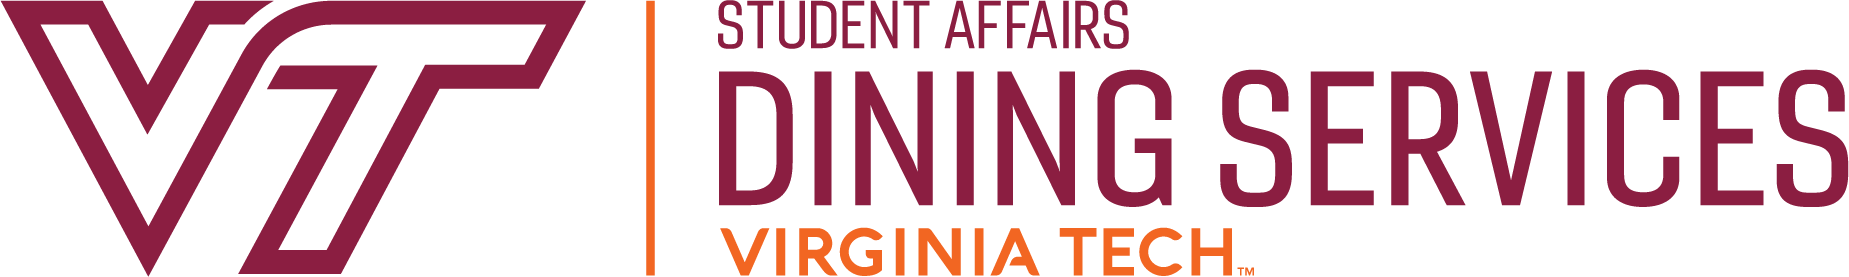 Dining Logo - Dining Services | Dining Services | Virginia Tech